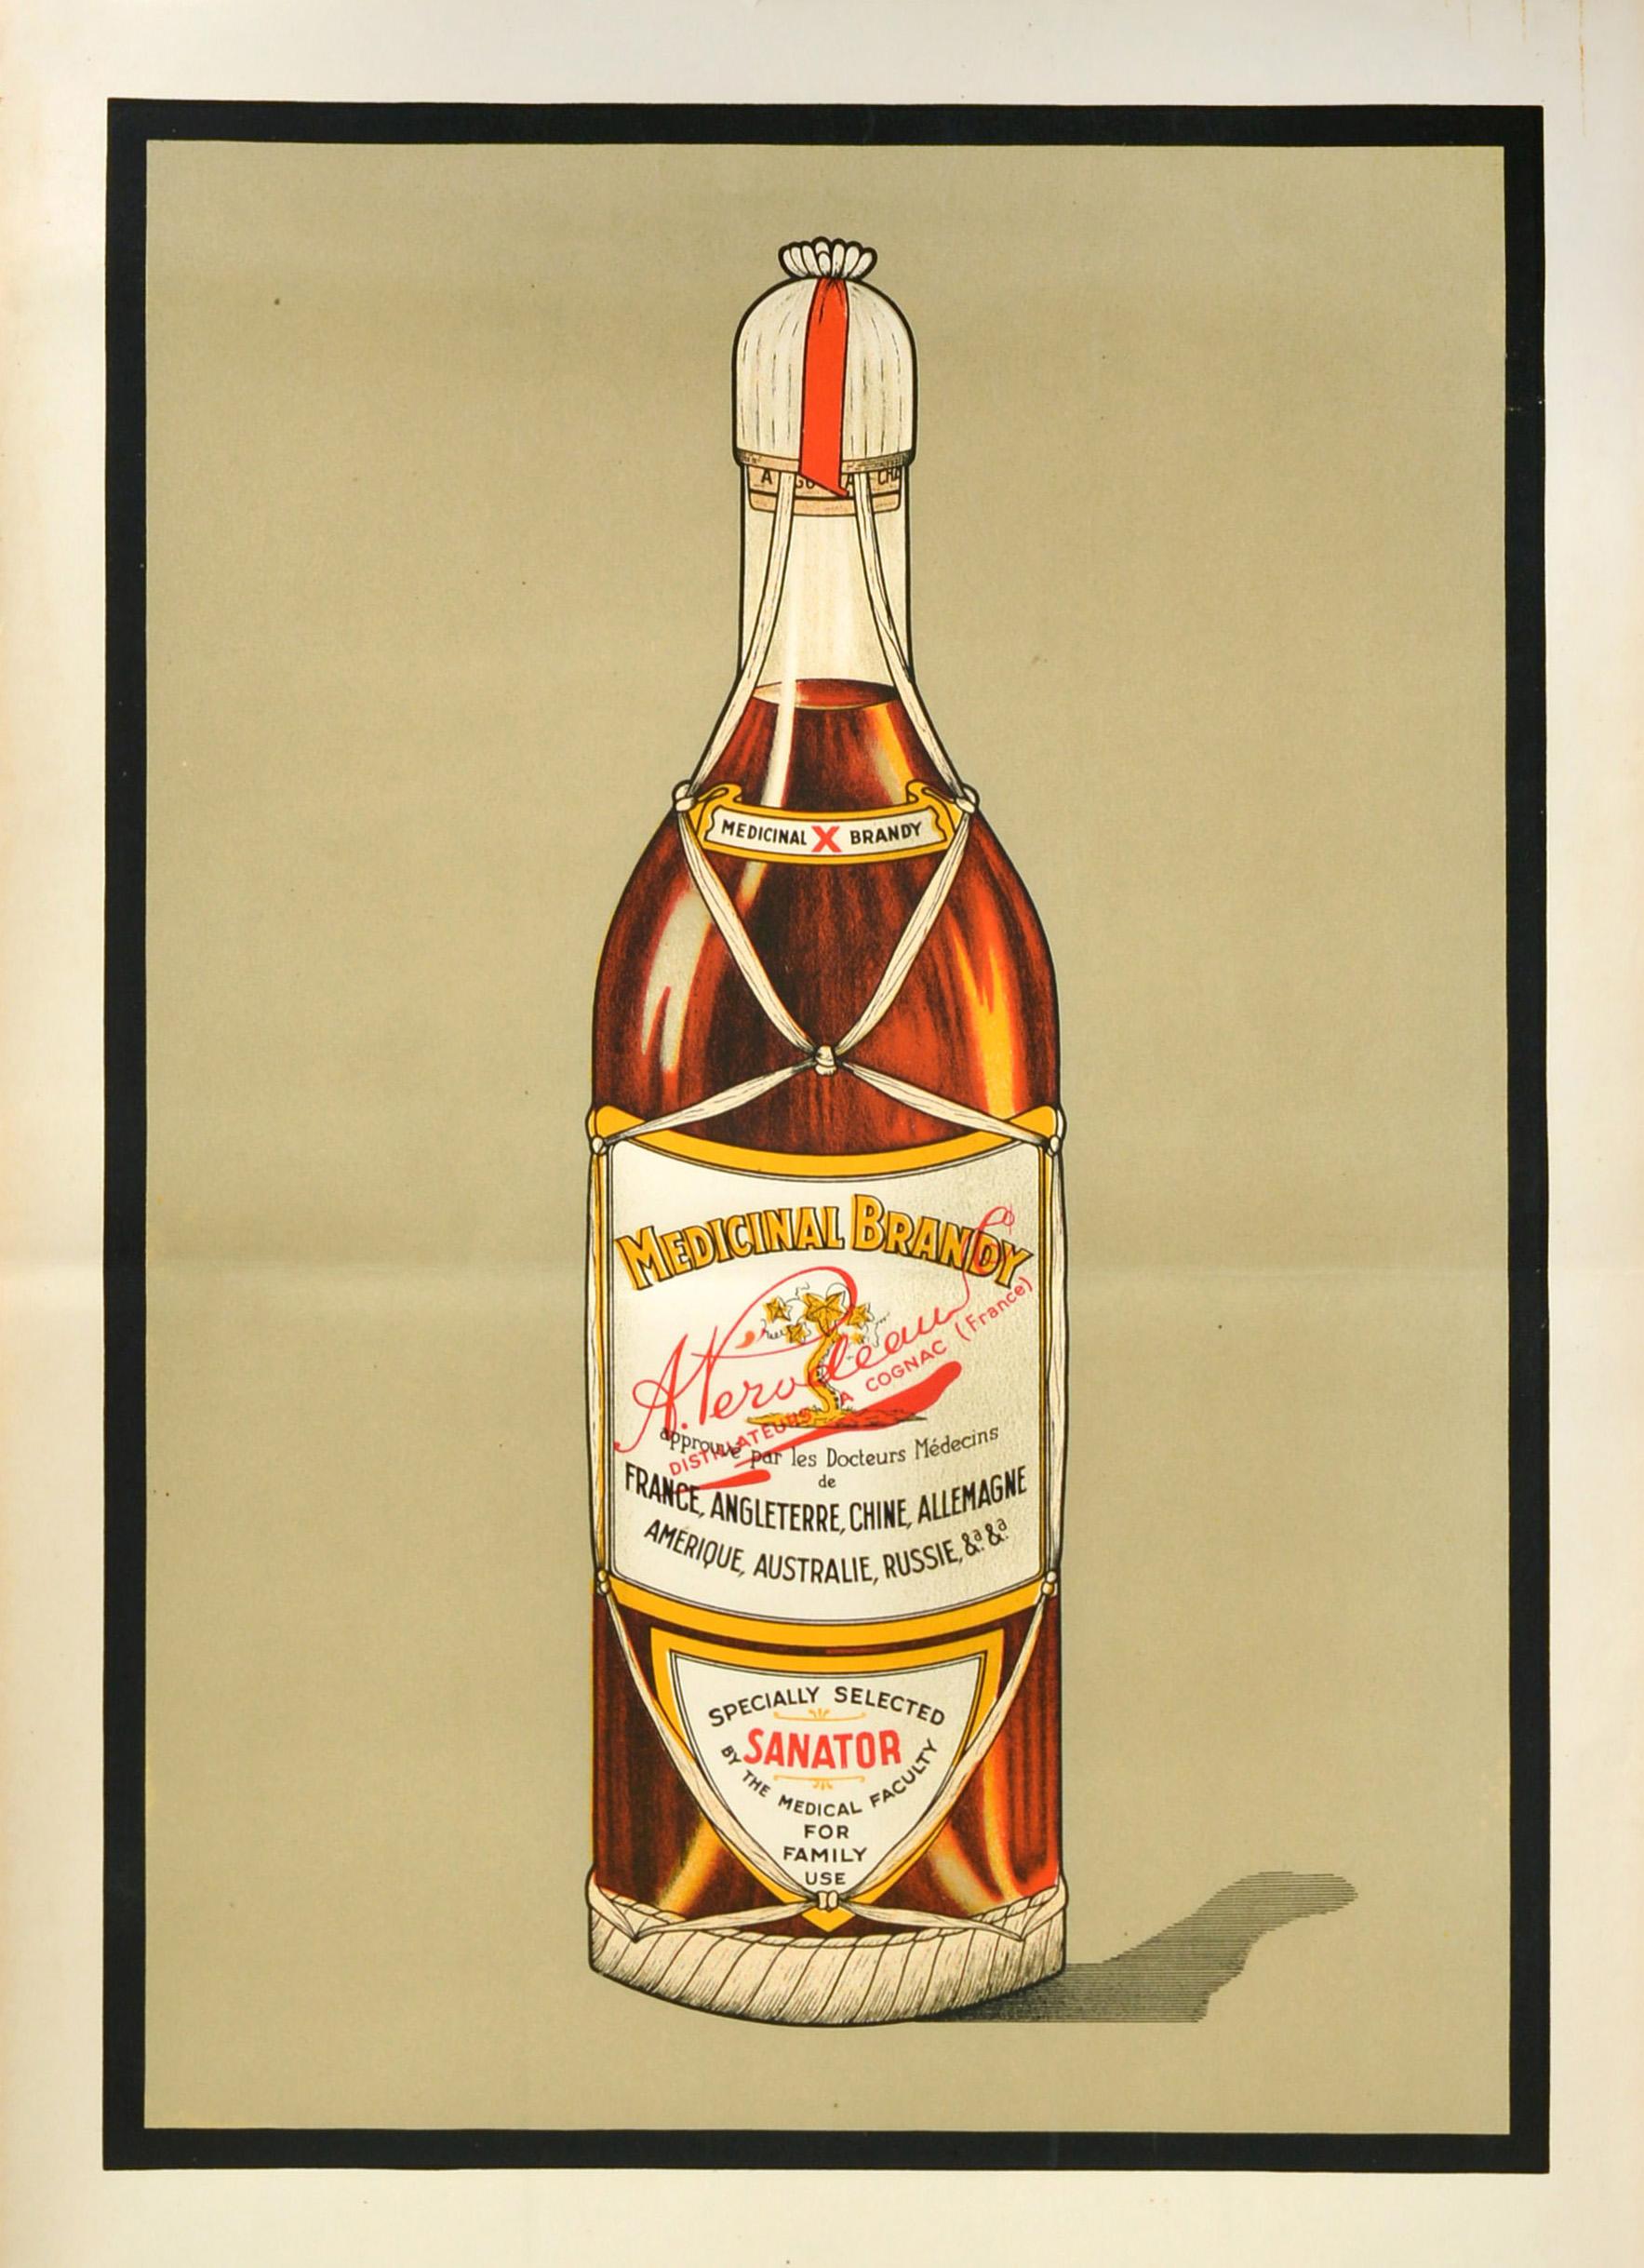 Affiche publicitaire originale pour le Medicinal Brandy A. Perodeau Sanator comportant une image de la bouteille d'alcool en haut avec les informations de l'étiquette en français et en anglais - Medicinal X Brandy distillateurs a Cognac France